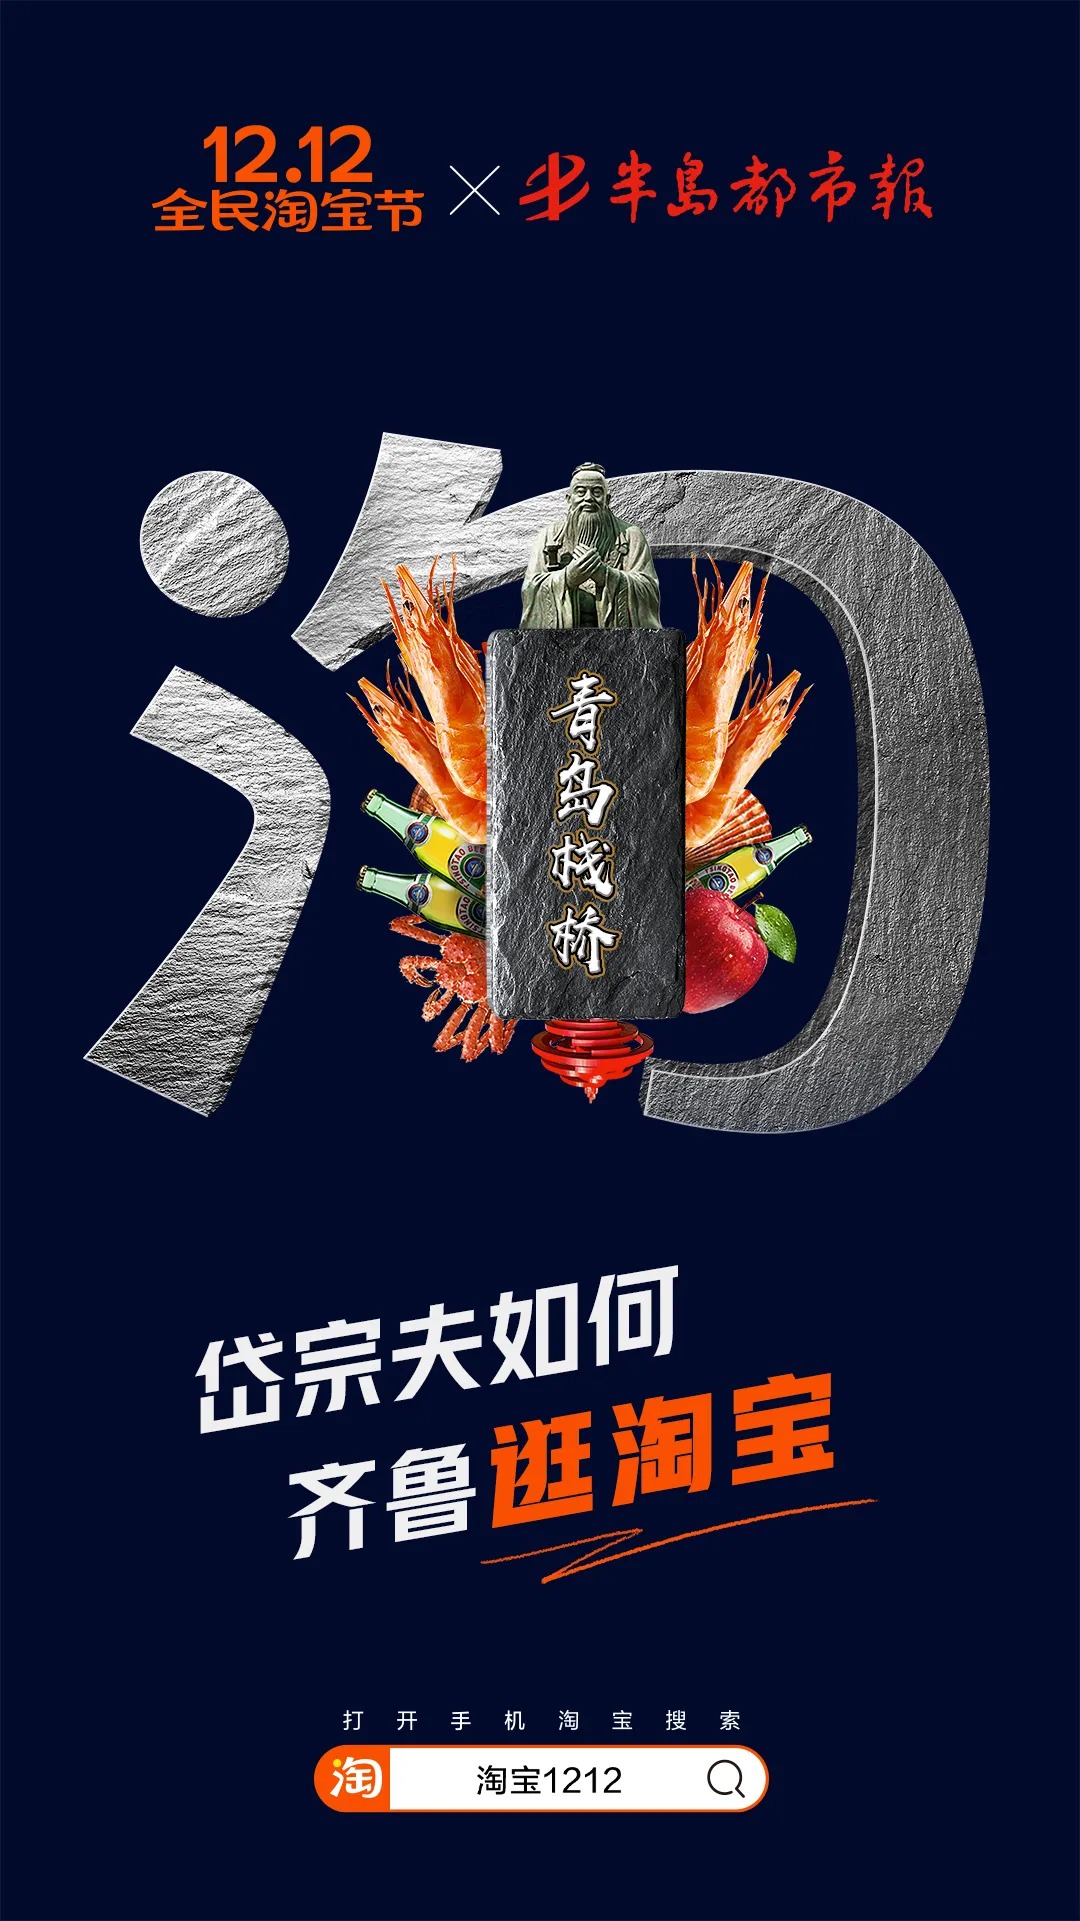 以中国34个省市为主题，淘宝双12海报设计